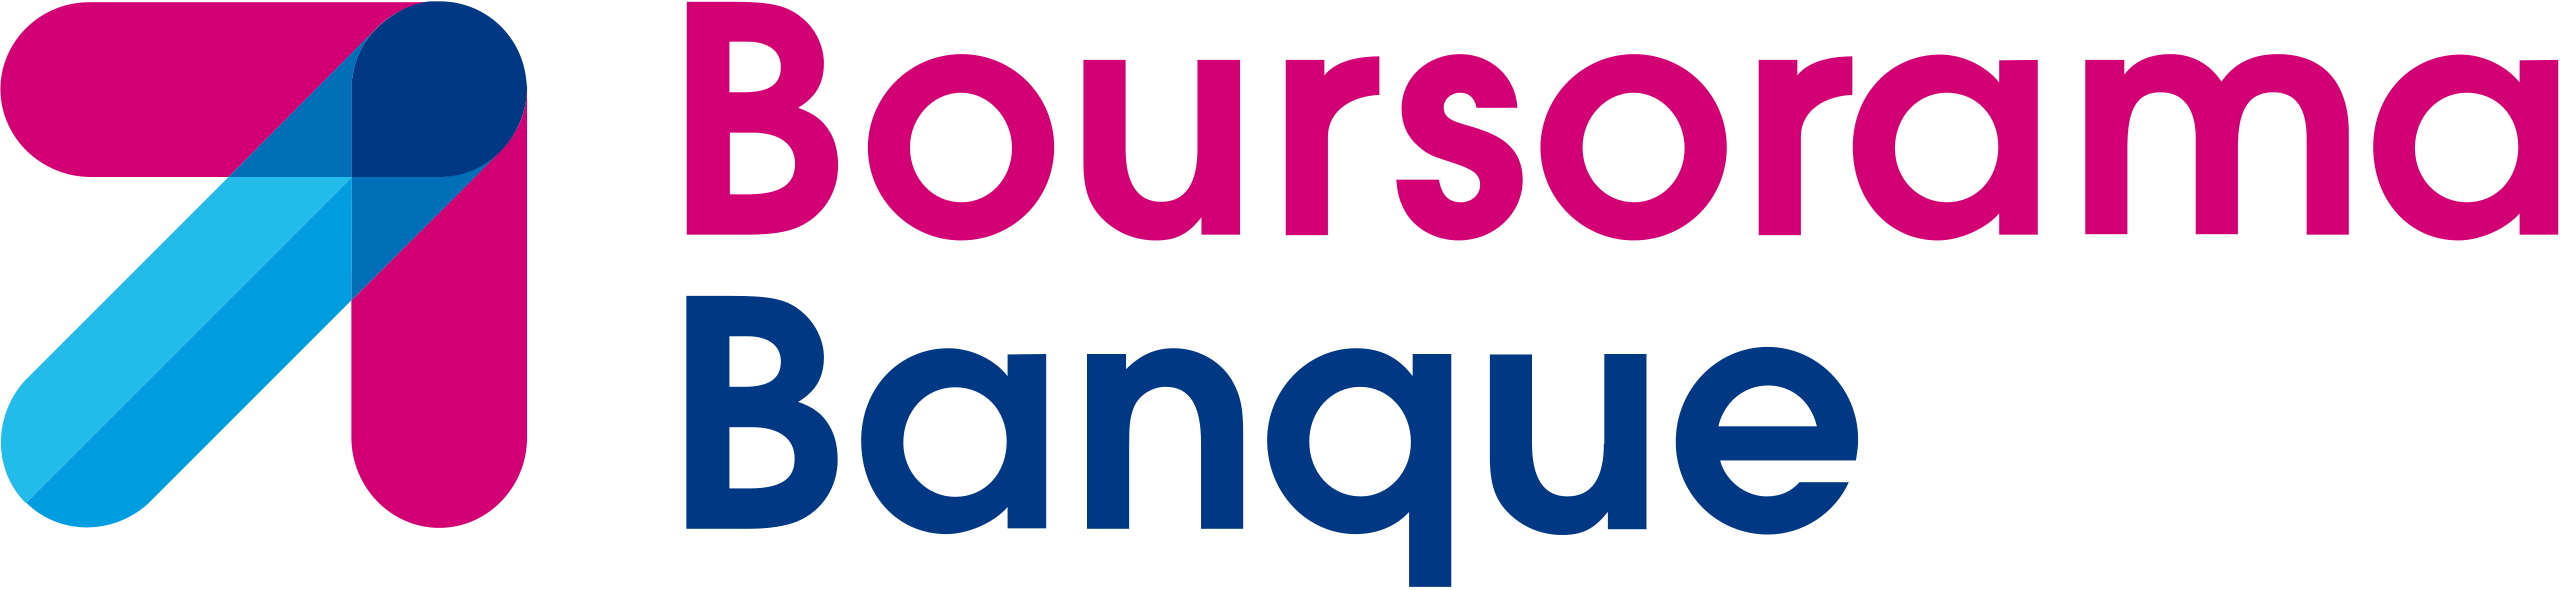 Logo-boursorama-banque.svg